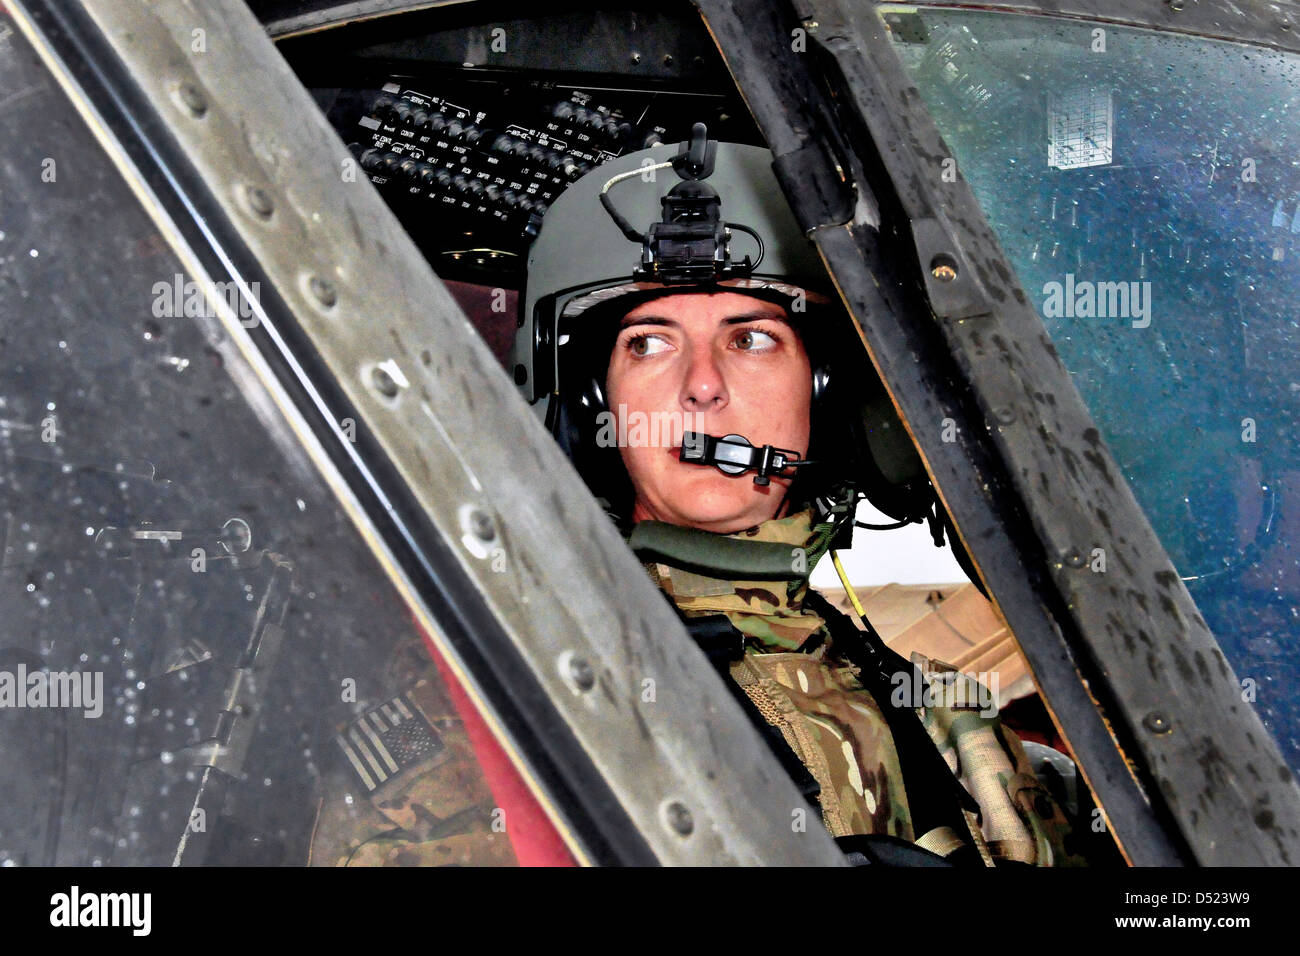 Suboficial del Ejército estadounidense Bethany Bump realiza su comprobación de pre-vuelo de un helicóptero Black Hawk UH-60 antes de una misión el 13 de marzo de 2013 en el Aeródromo de Jalalabad, en la provincia de Nangarhar, Afganistán. Foto de stock